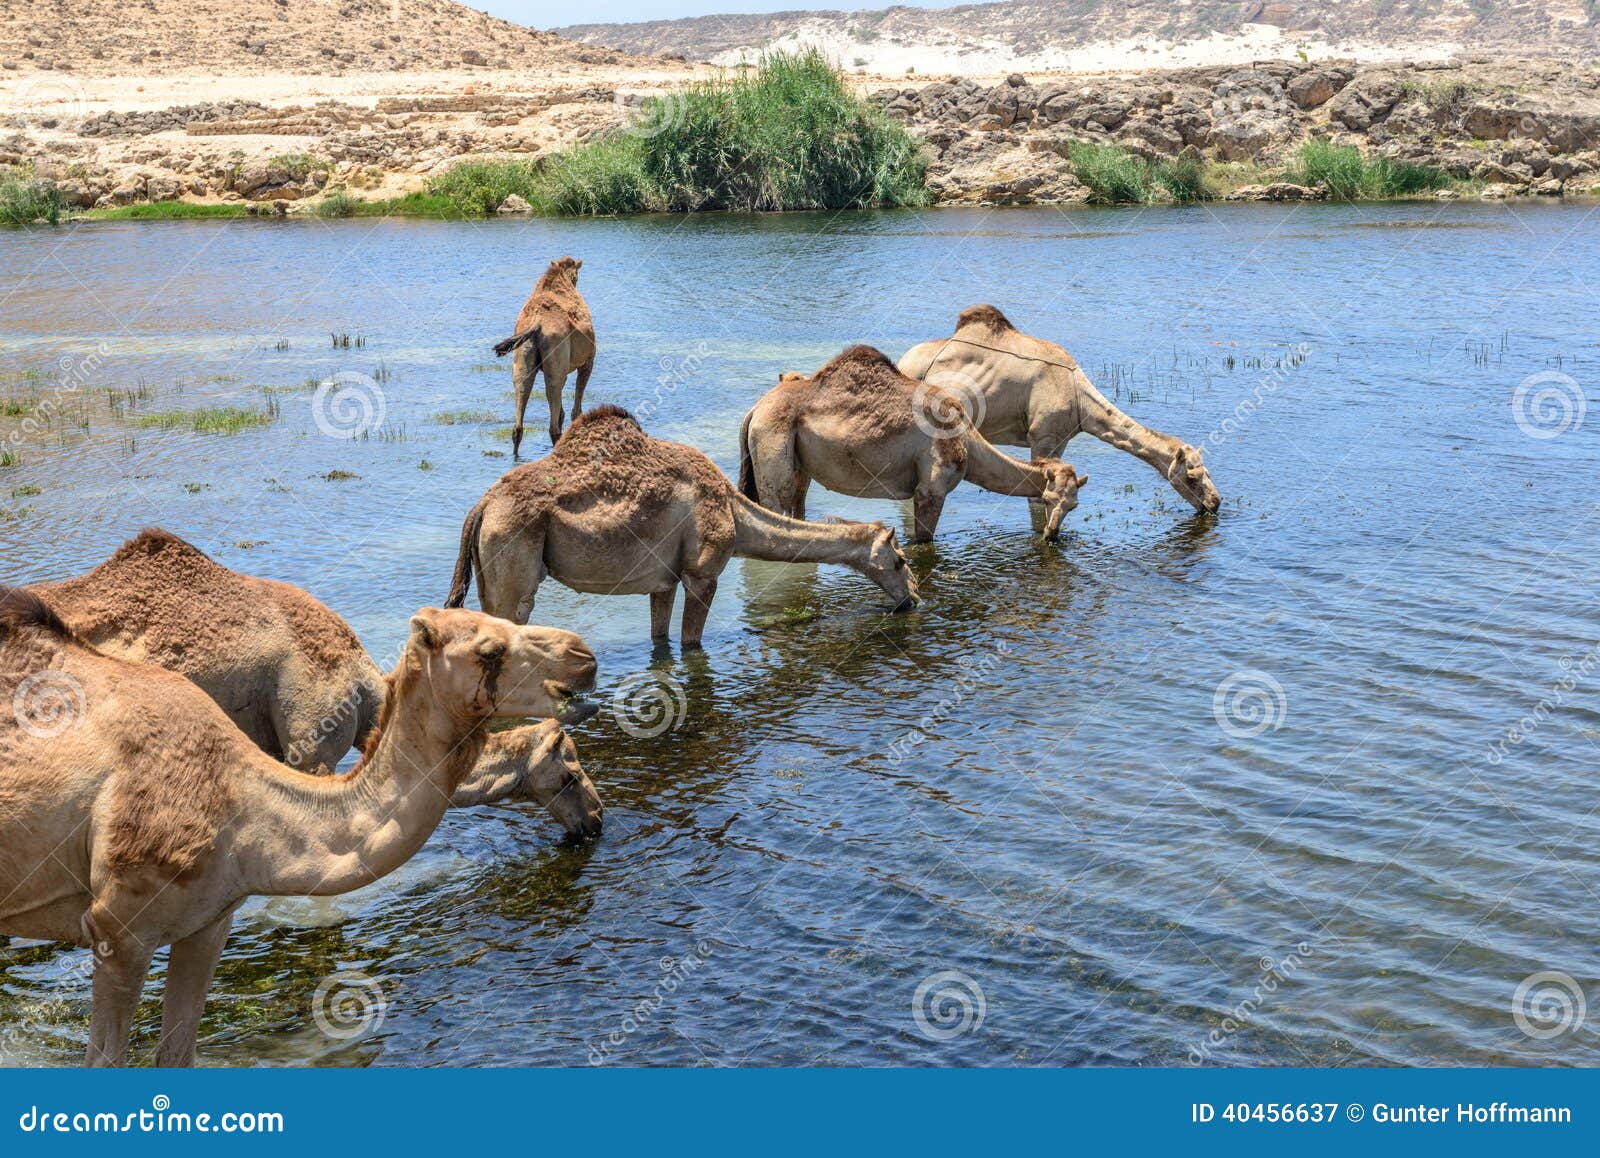 dromedaries at wadi darbat, taqah (oman)